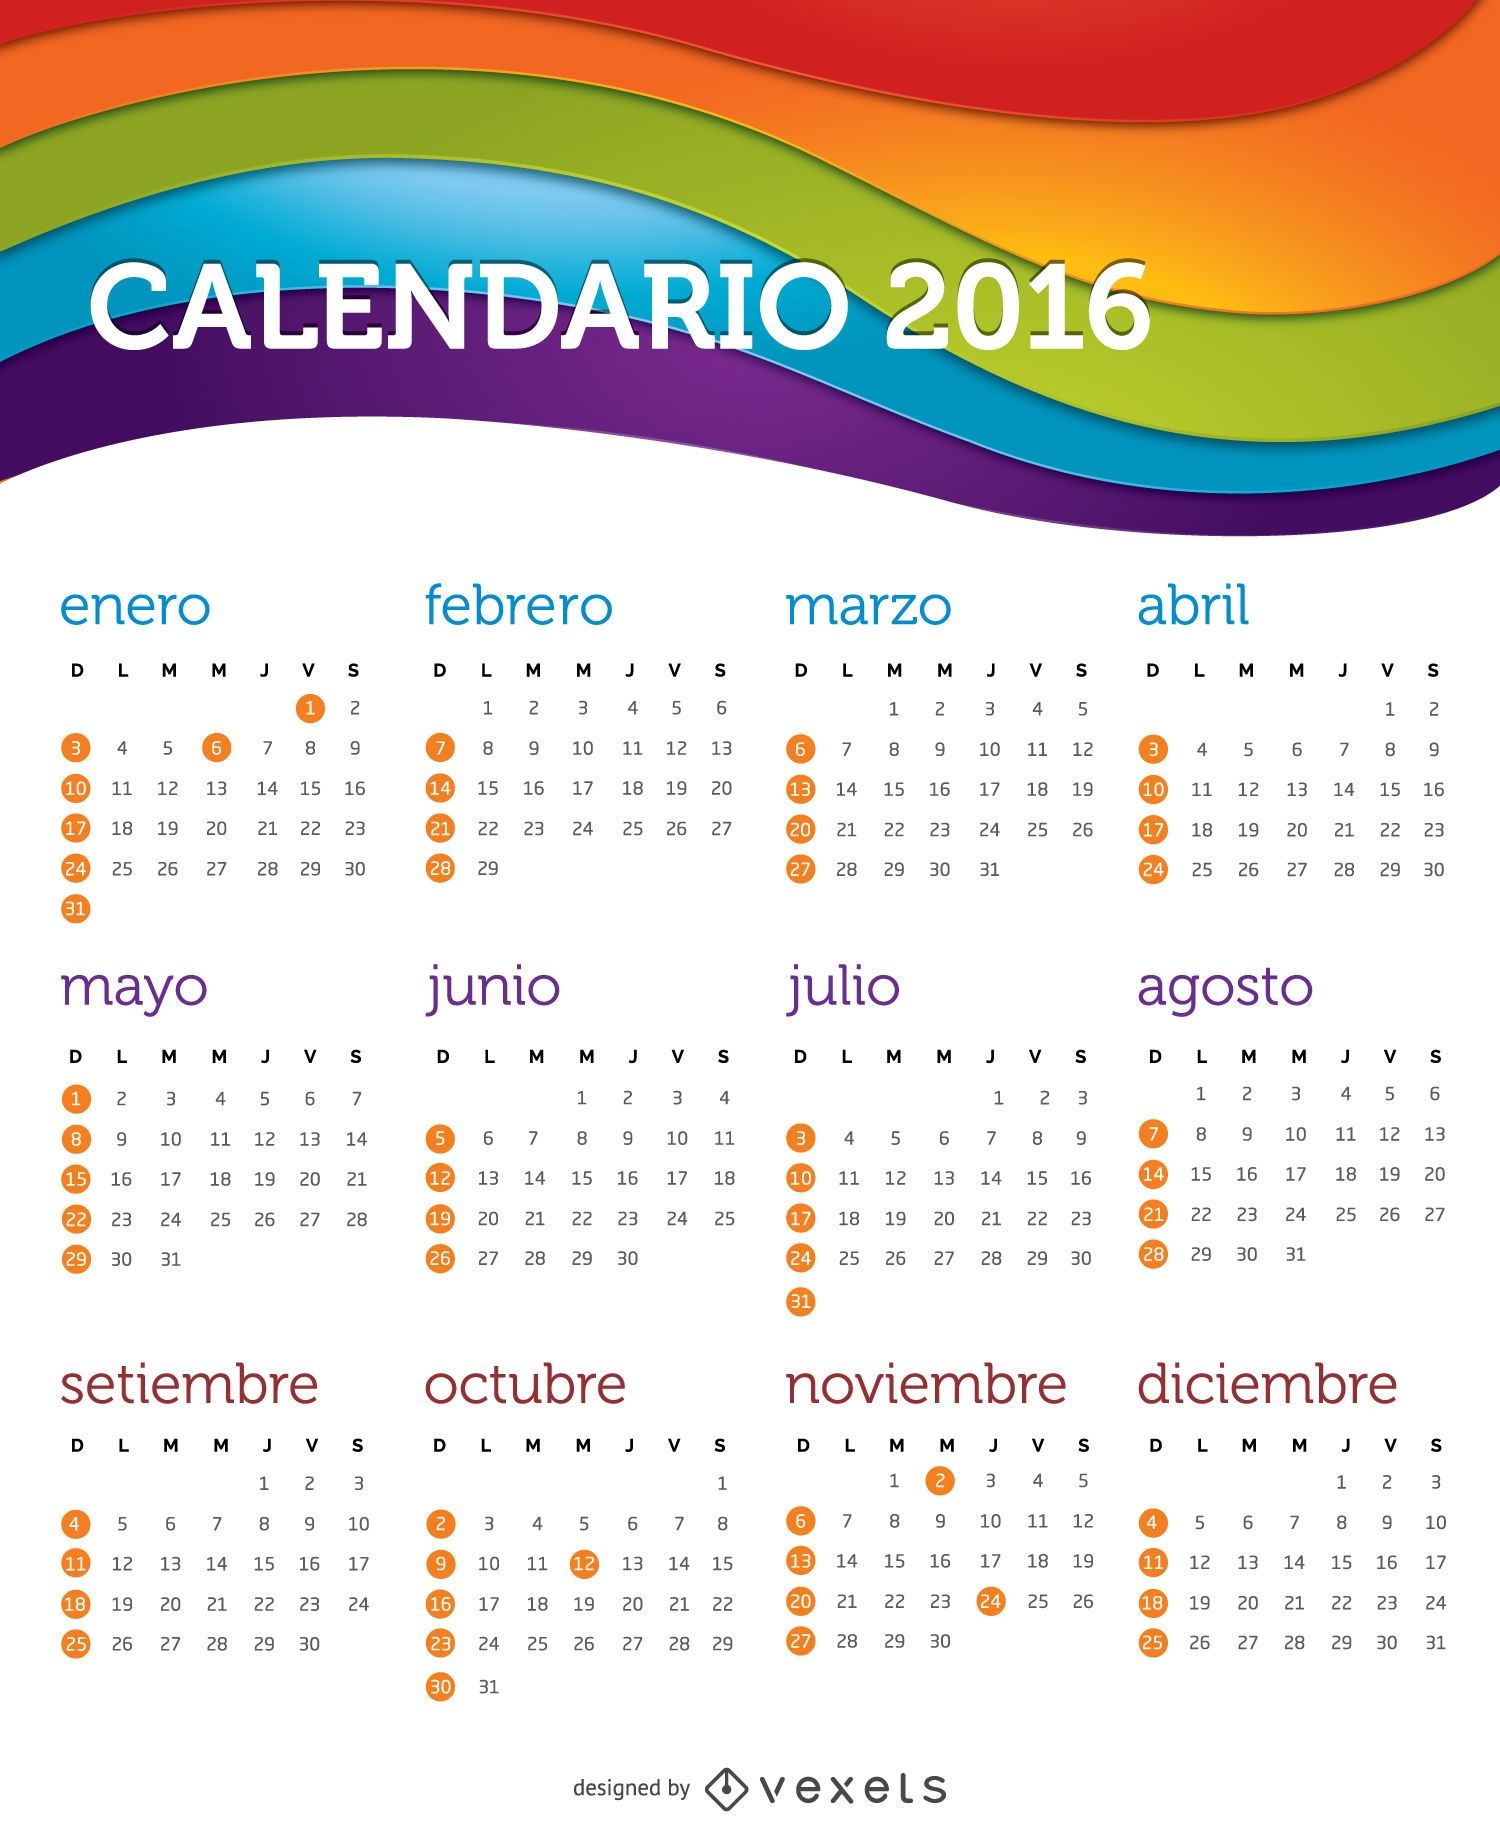 Calendario 2016 espa?ol